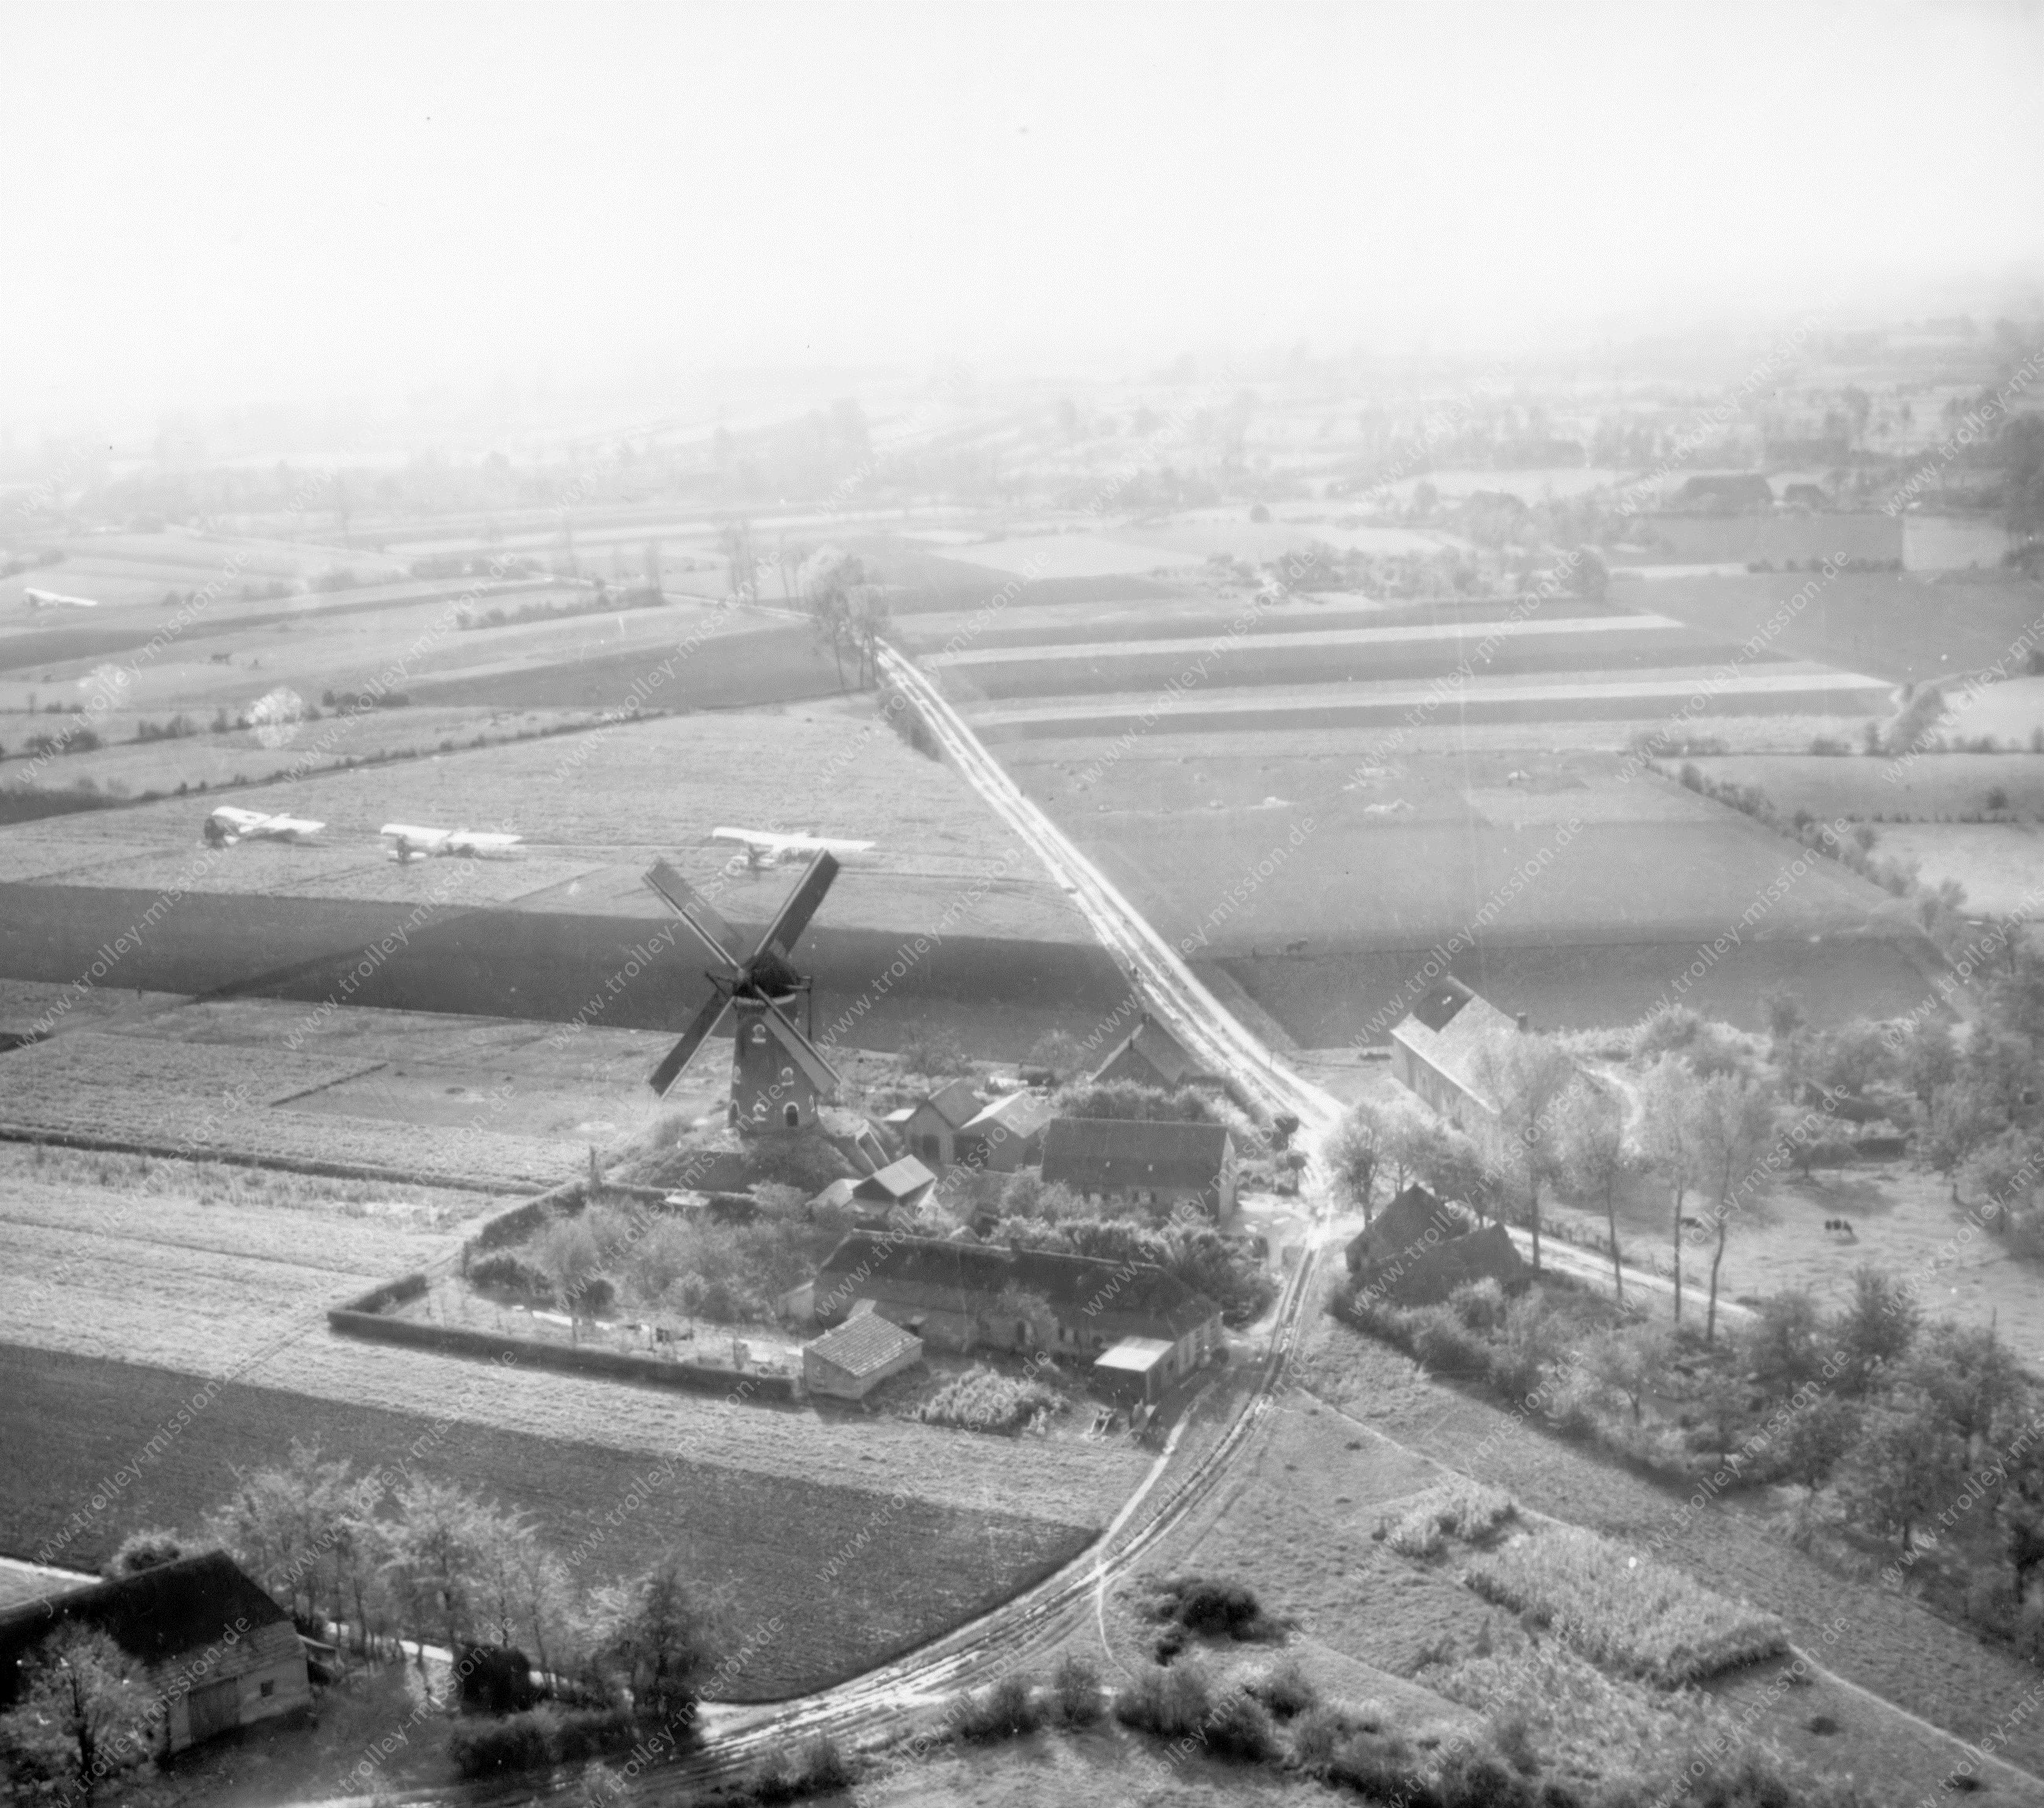 Operation Market Garden - Windmühle im Patrijsweg 1 im Dorf Uden in der Gemeinde Maashorst in der Provinz Noord-Brabant (Niederlande)